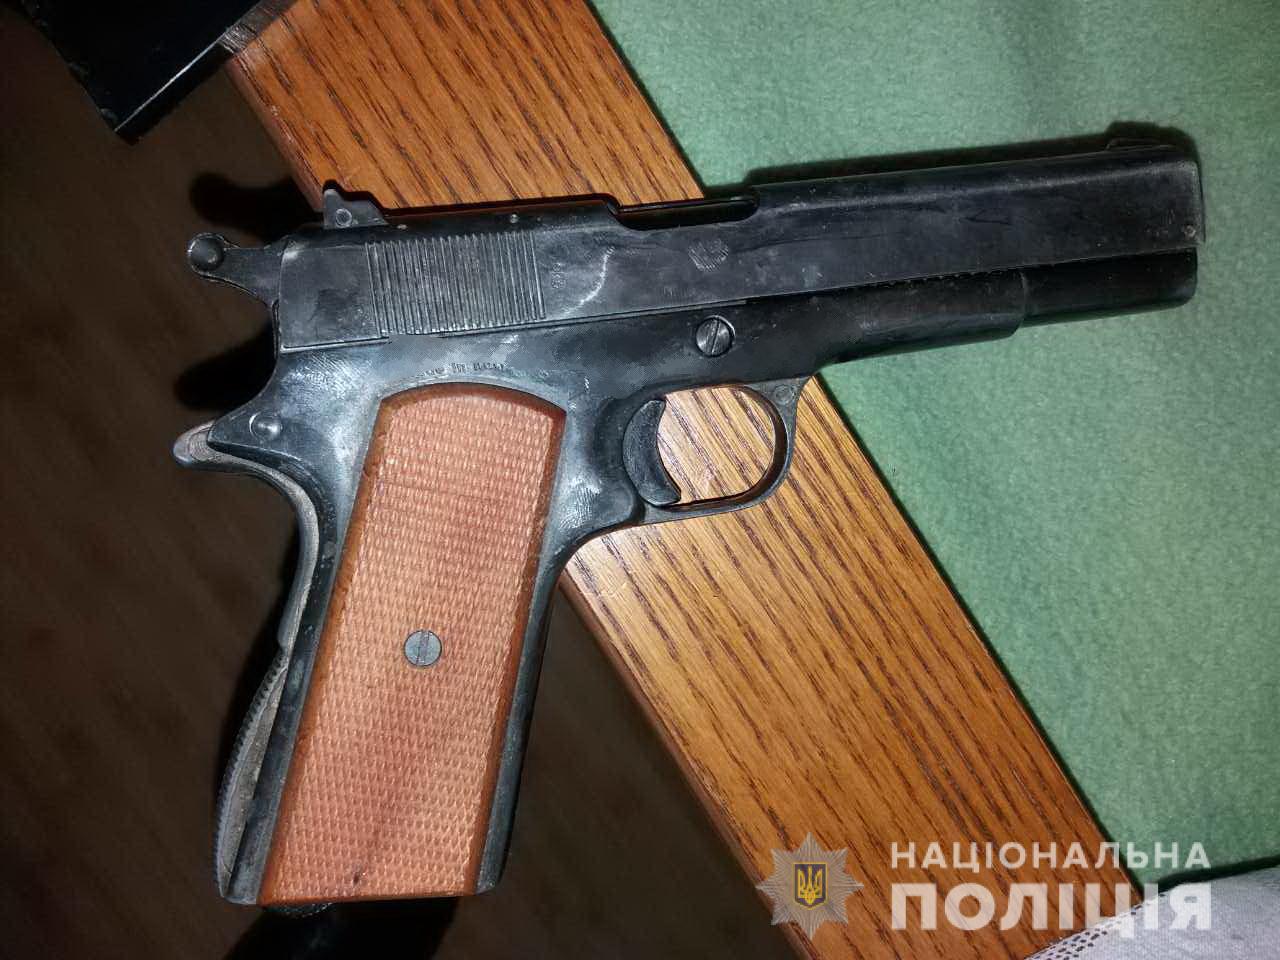 Під час обшуку оселі мешканця Іршави вилучили пістолет і дев’ять ножів (ФОТО)